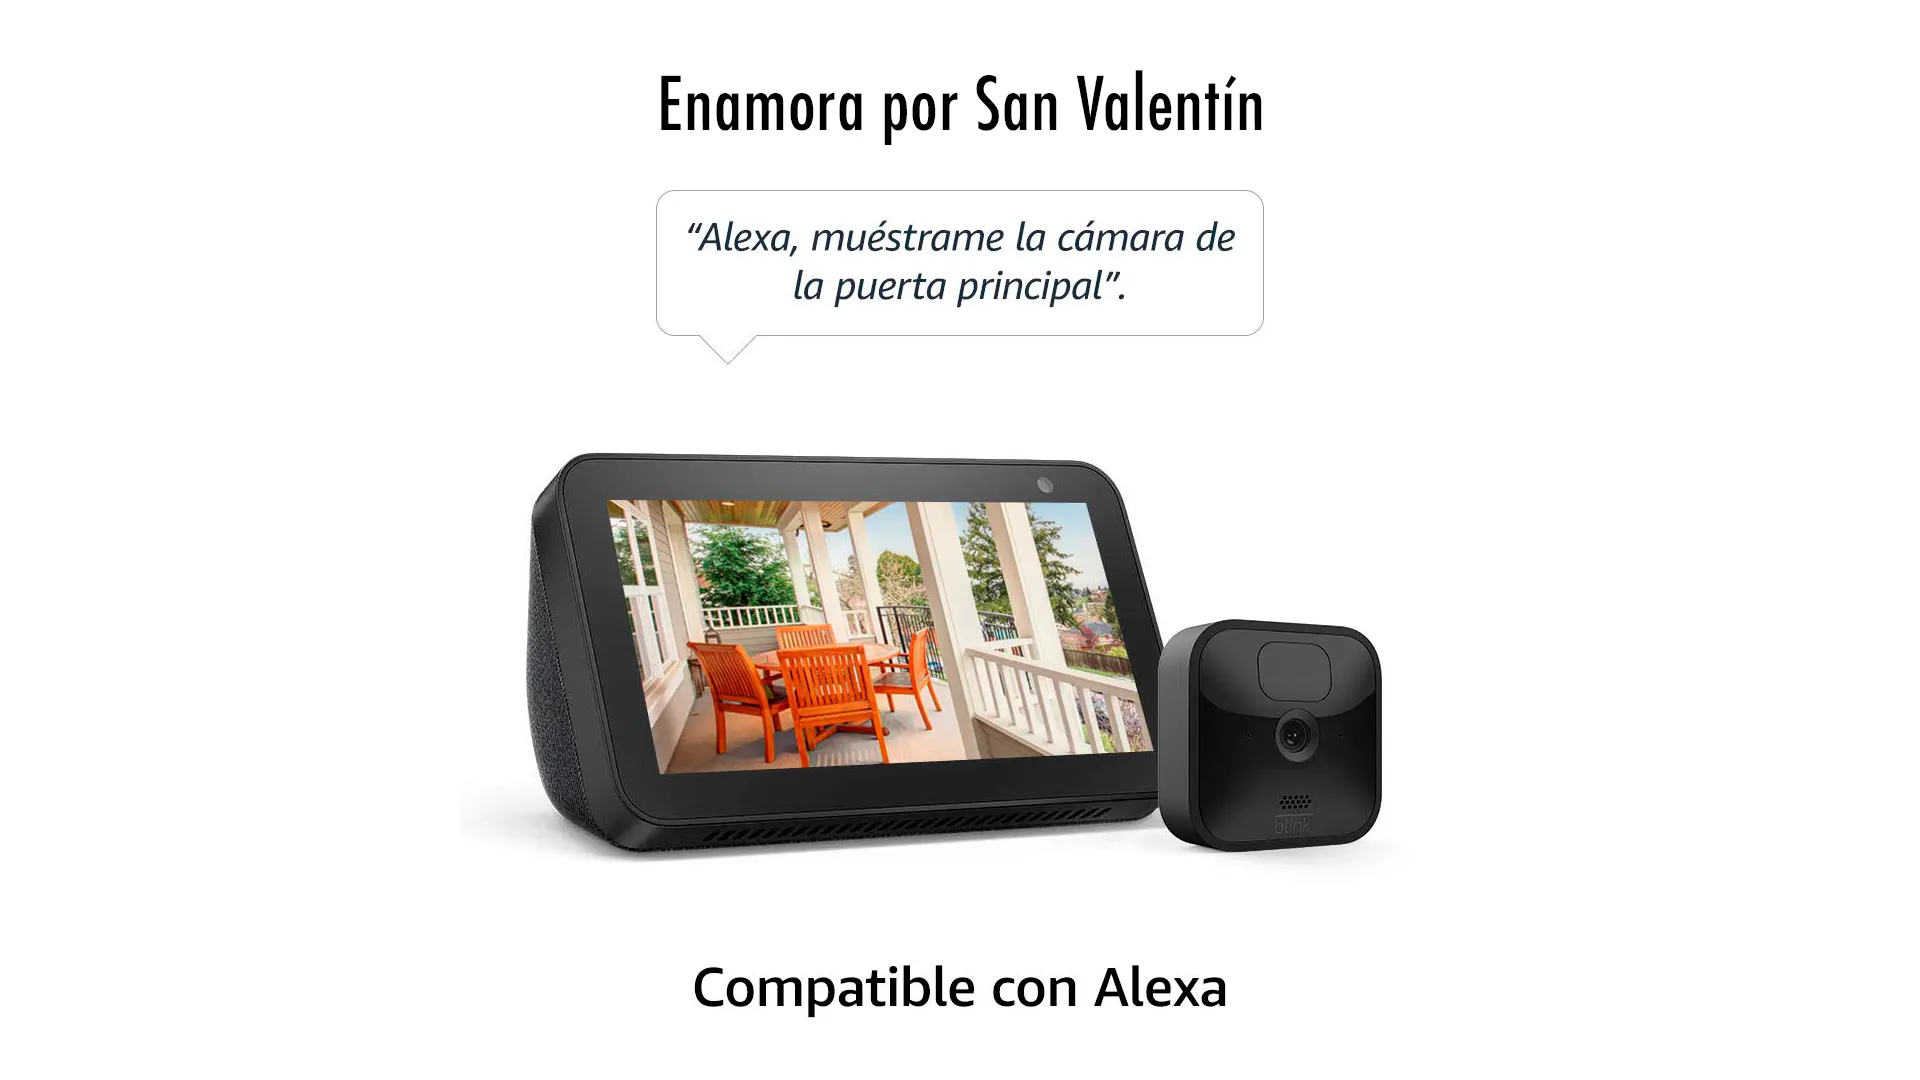 Enamora por San Valentín con la oferta de Blink Outdoor Cámara de seguridad HD + Echo Show 5